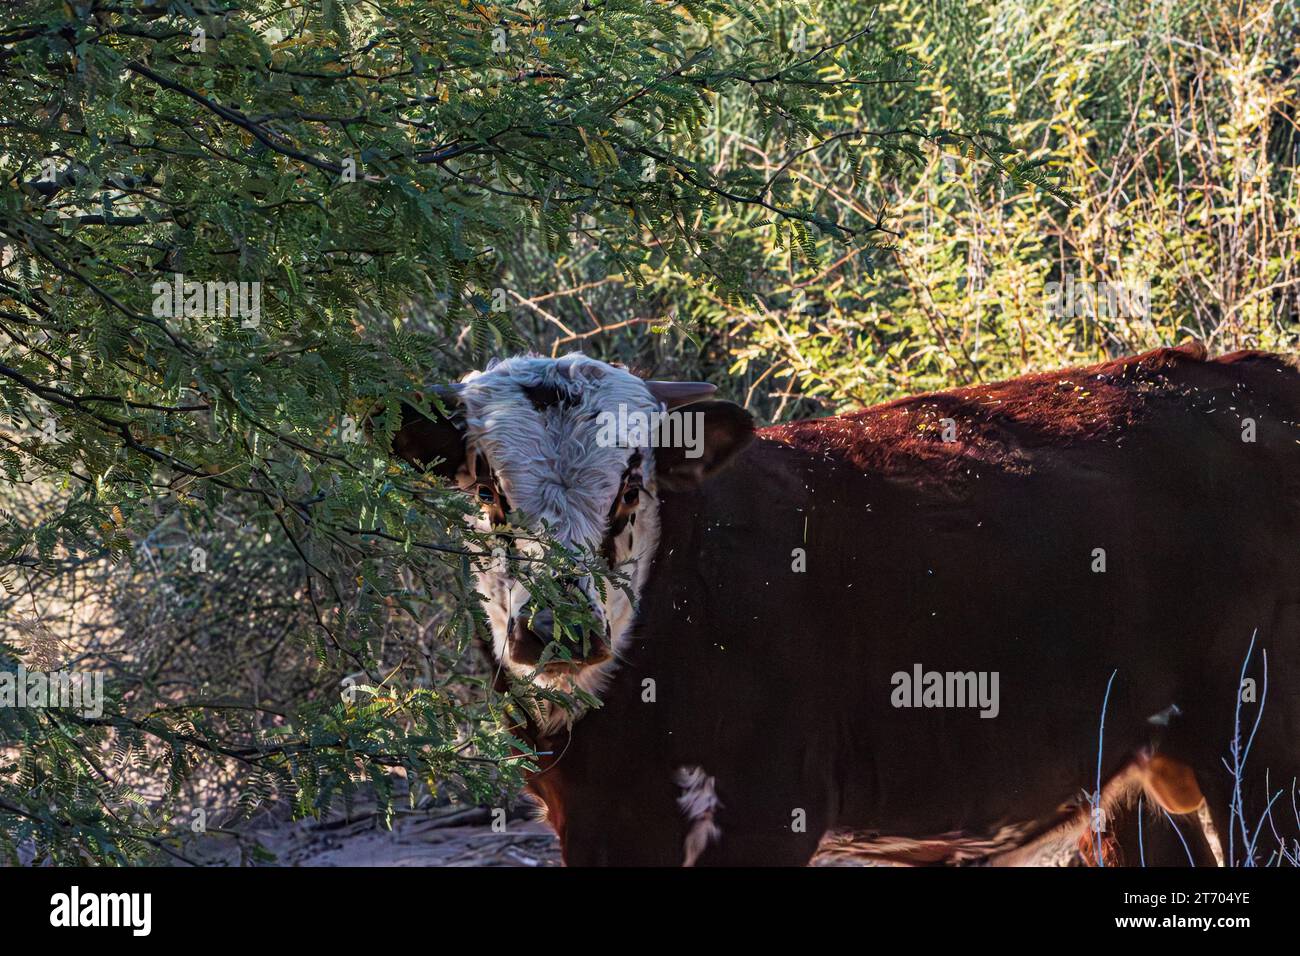 Sì, sono Una mucca selvatica nella Terra dei cavalli selvaggi Foto Stock